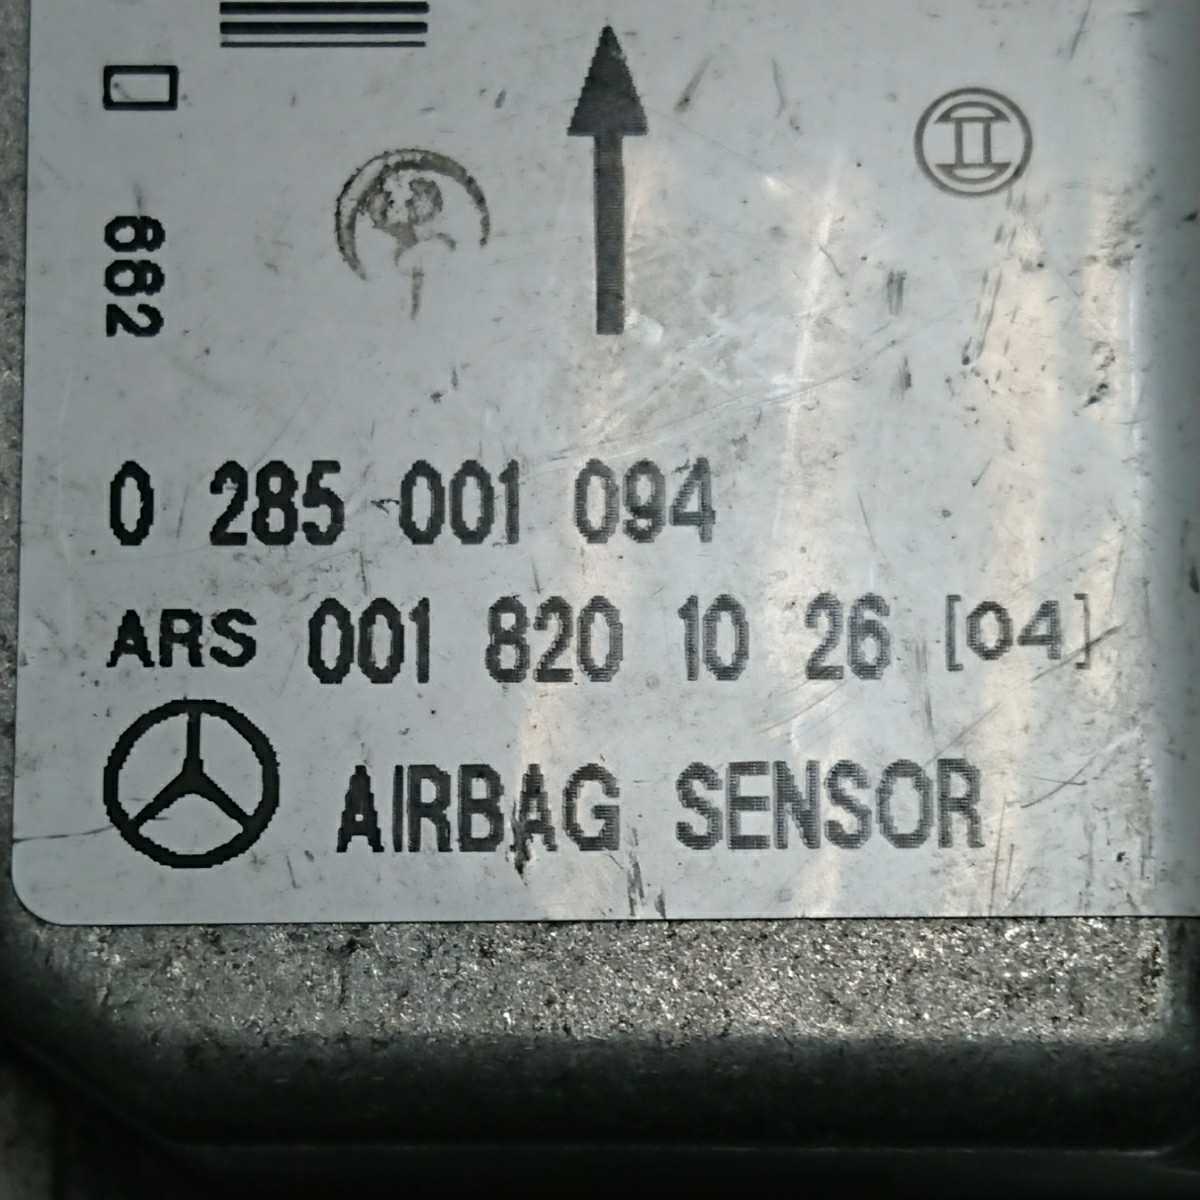 MC-104 Mercedes * Benz W202 W210 W220 SRS air bag crash sensor 001 820 10 26